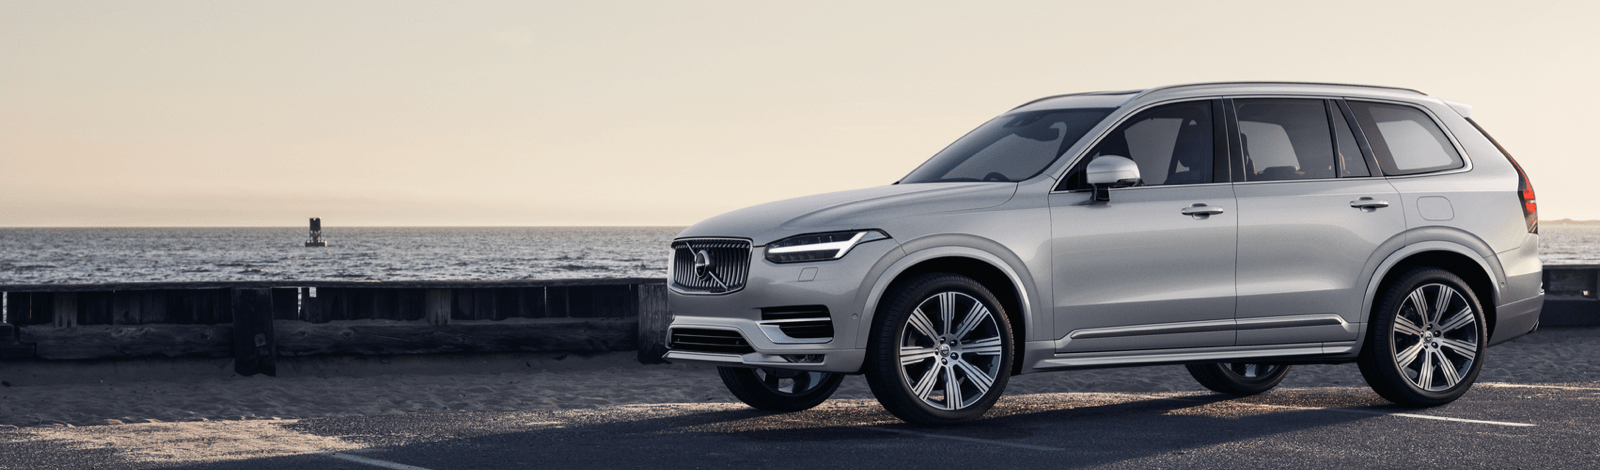 mLeasing - leasing Volvo 